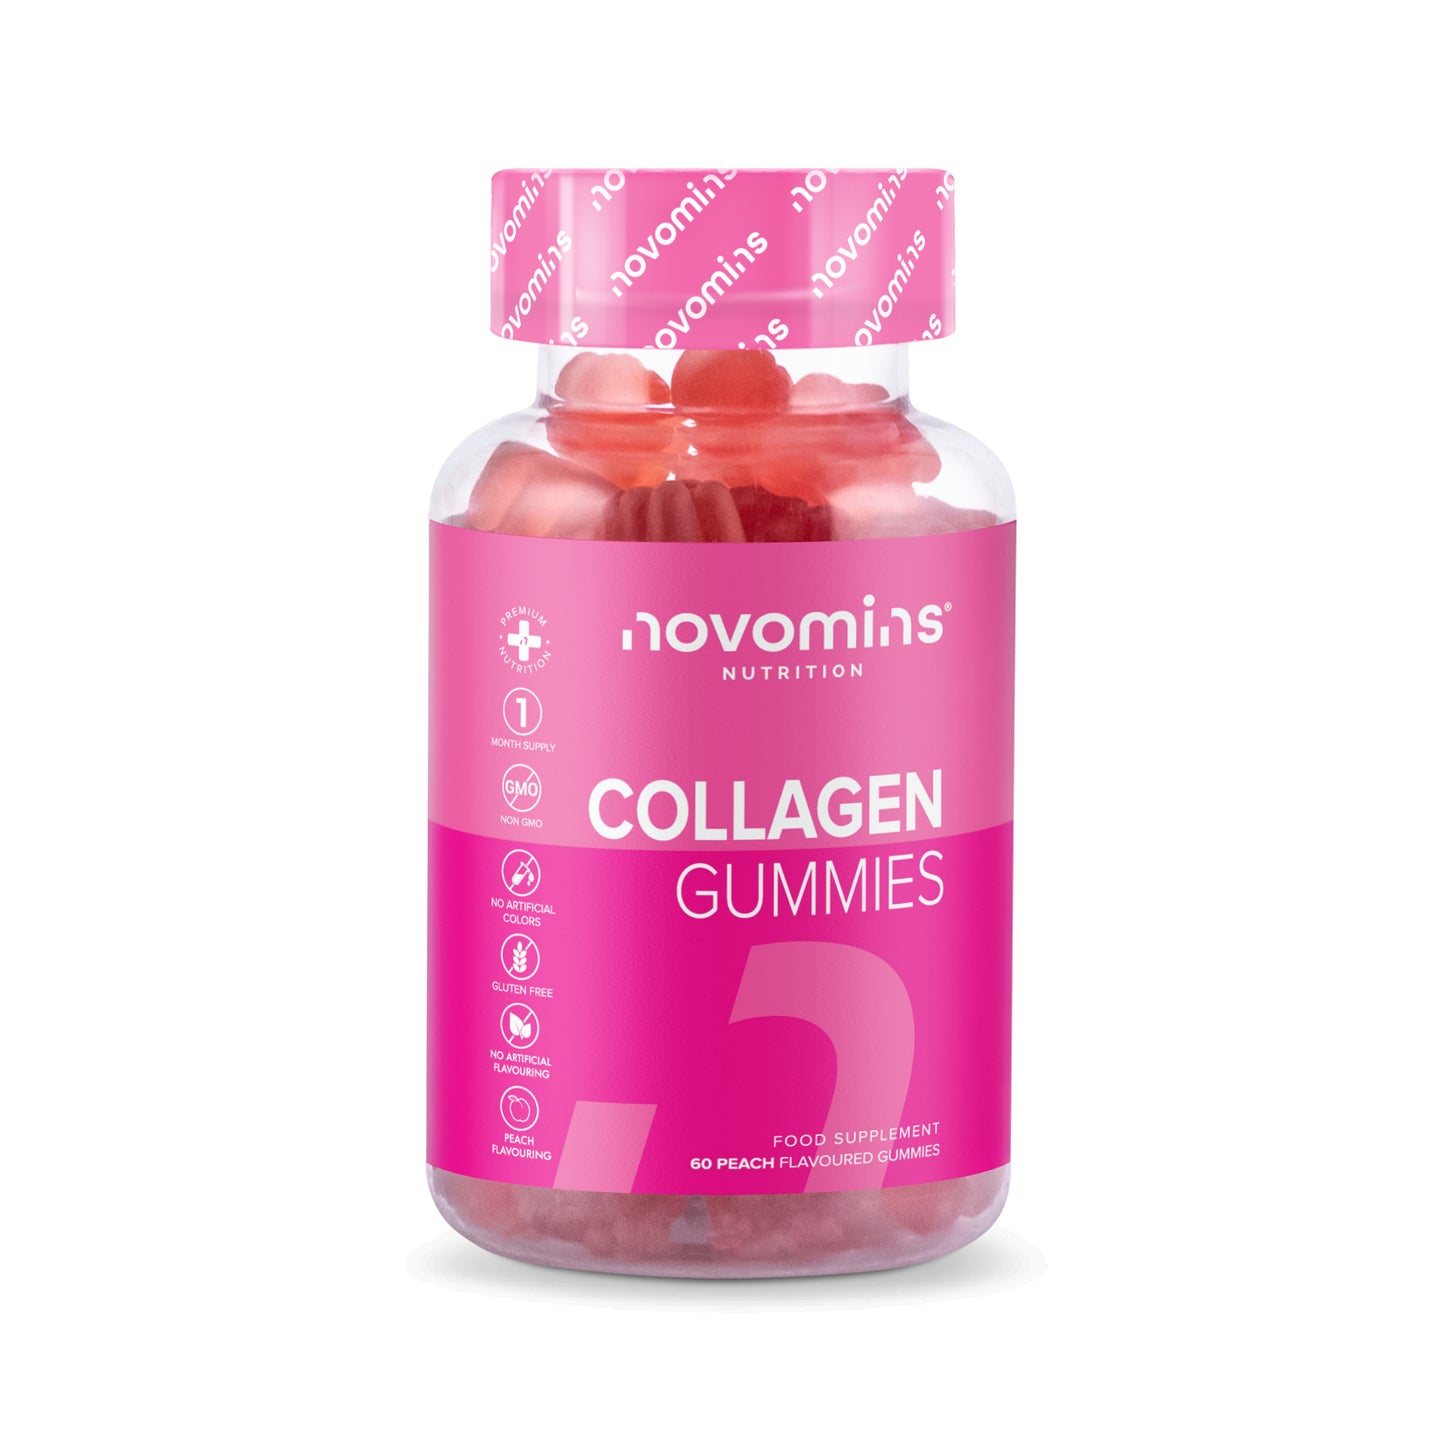 Novomins Collagen Gummies 60 pack